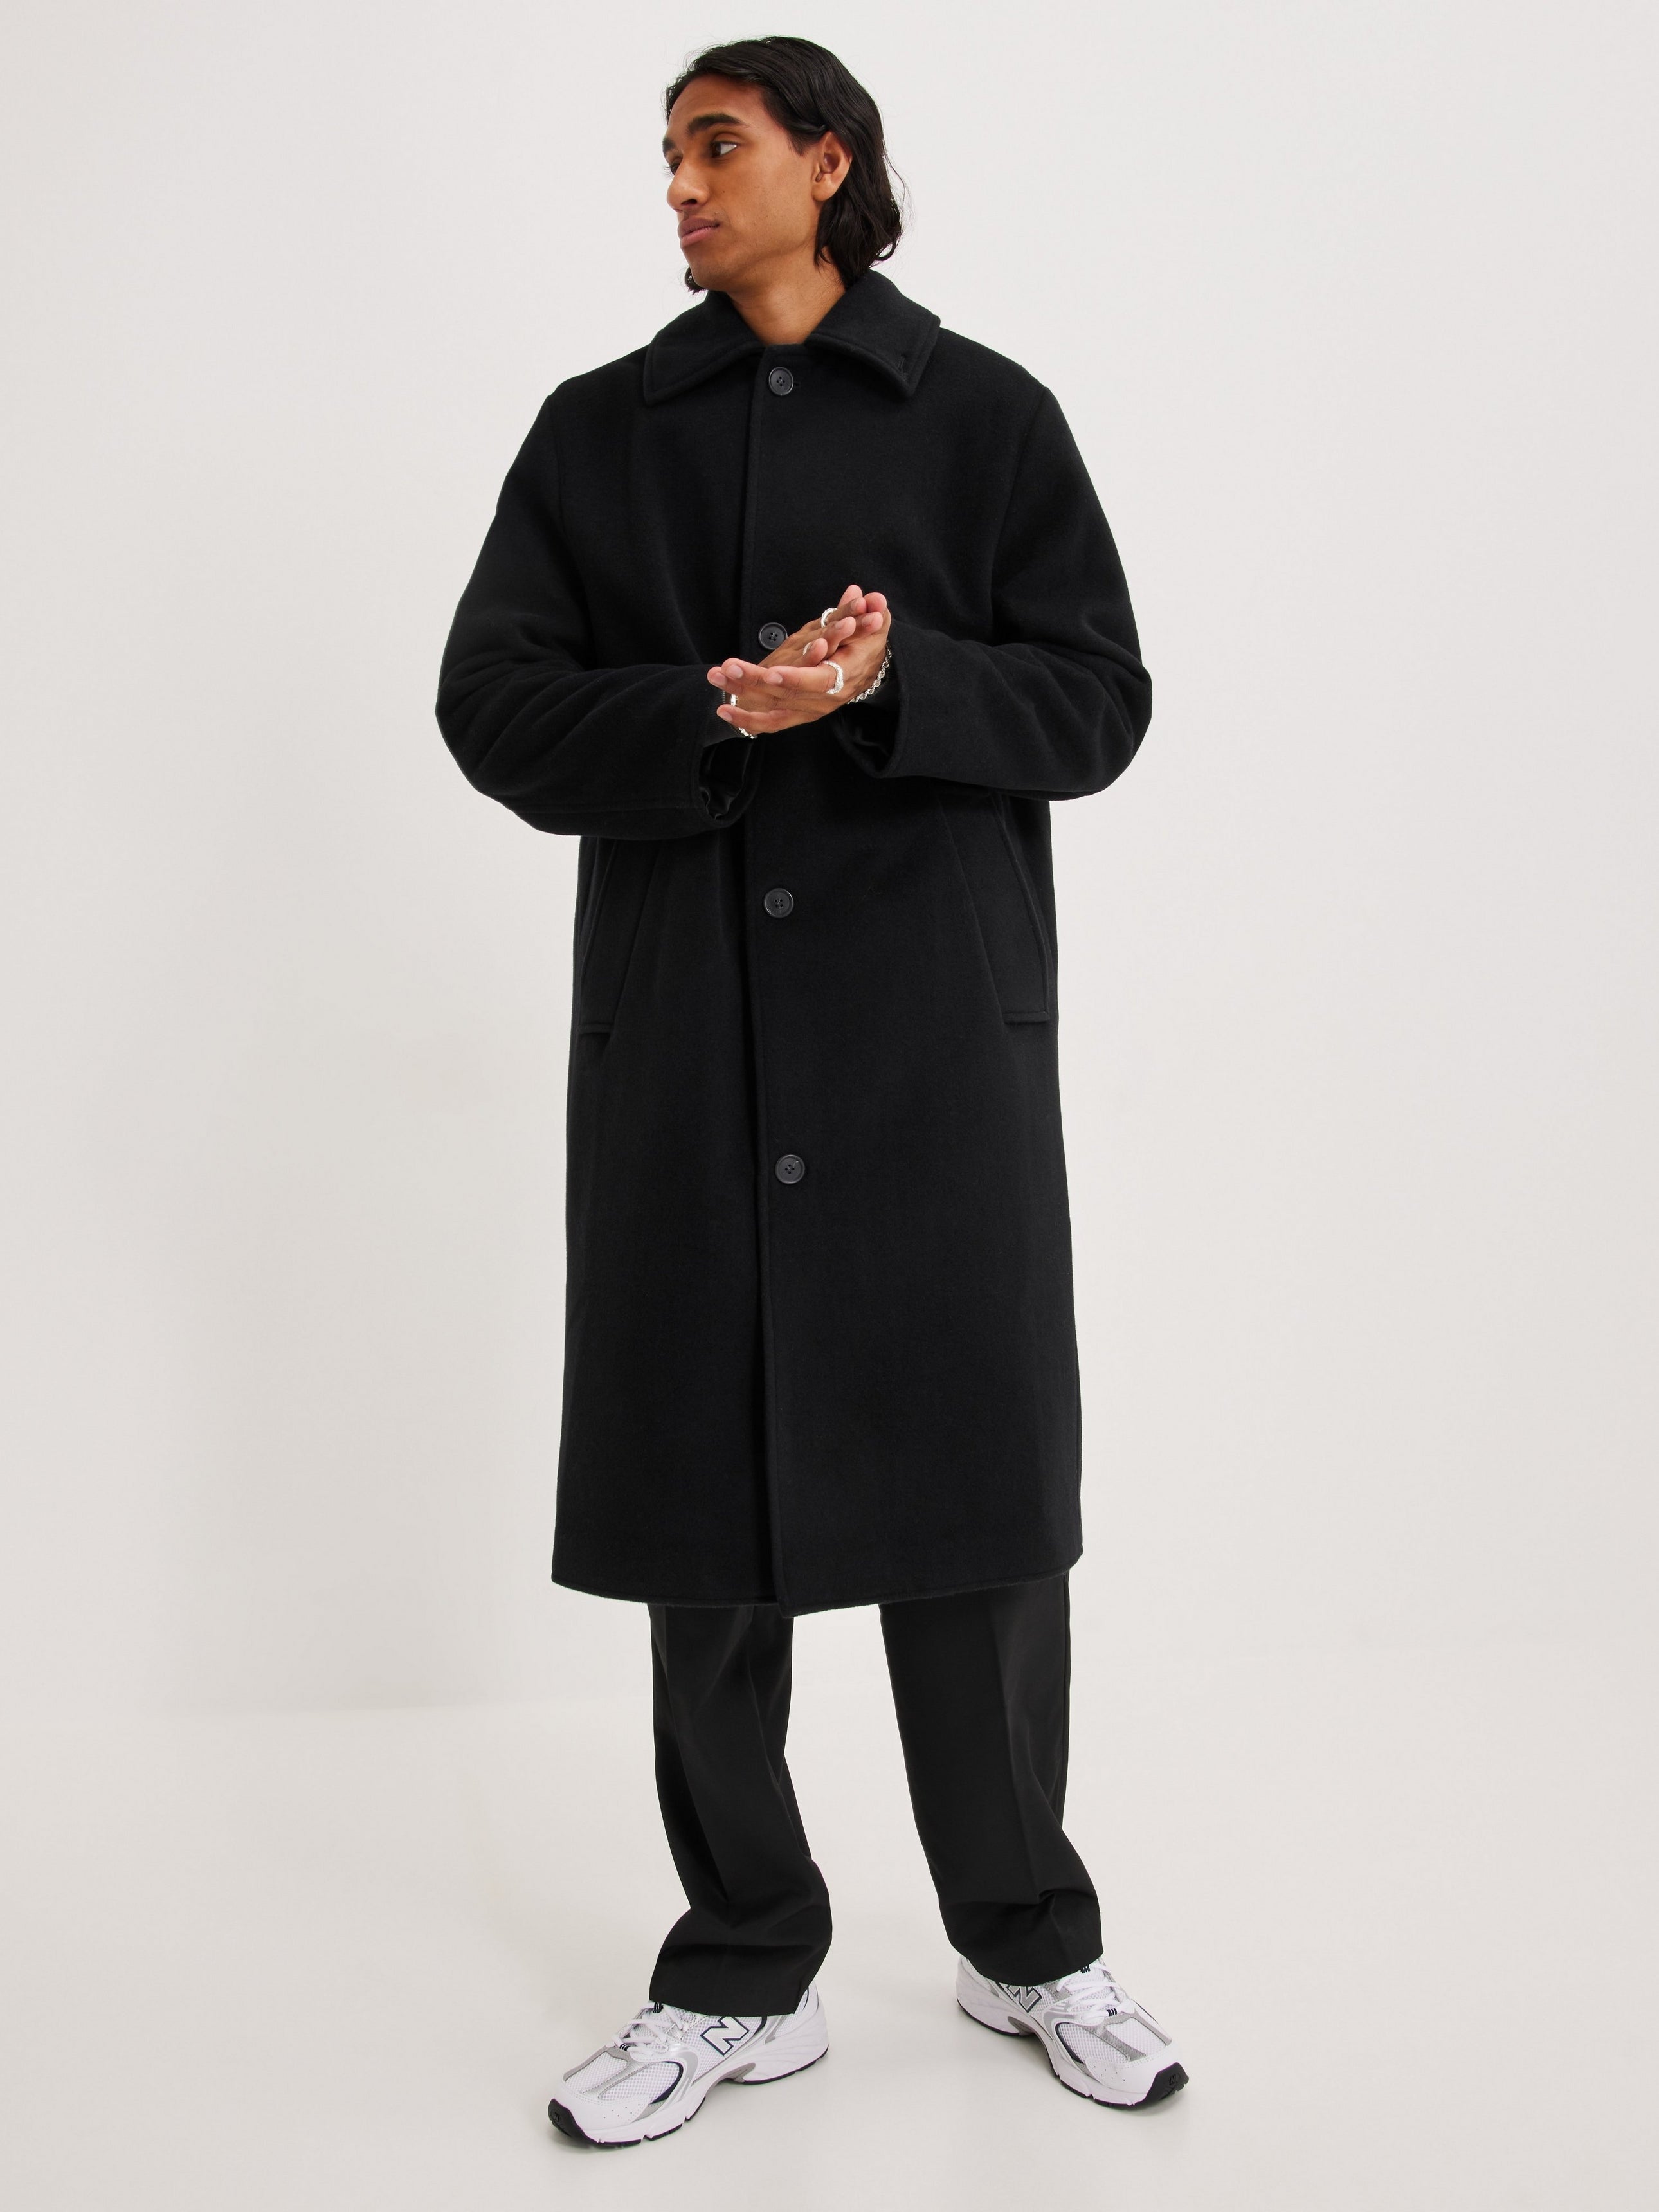 Brixtol Textiles Gil Coat. black